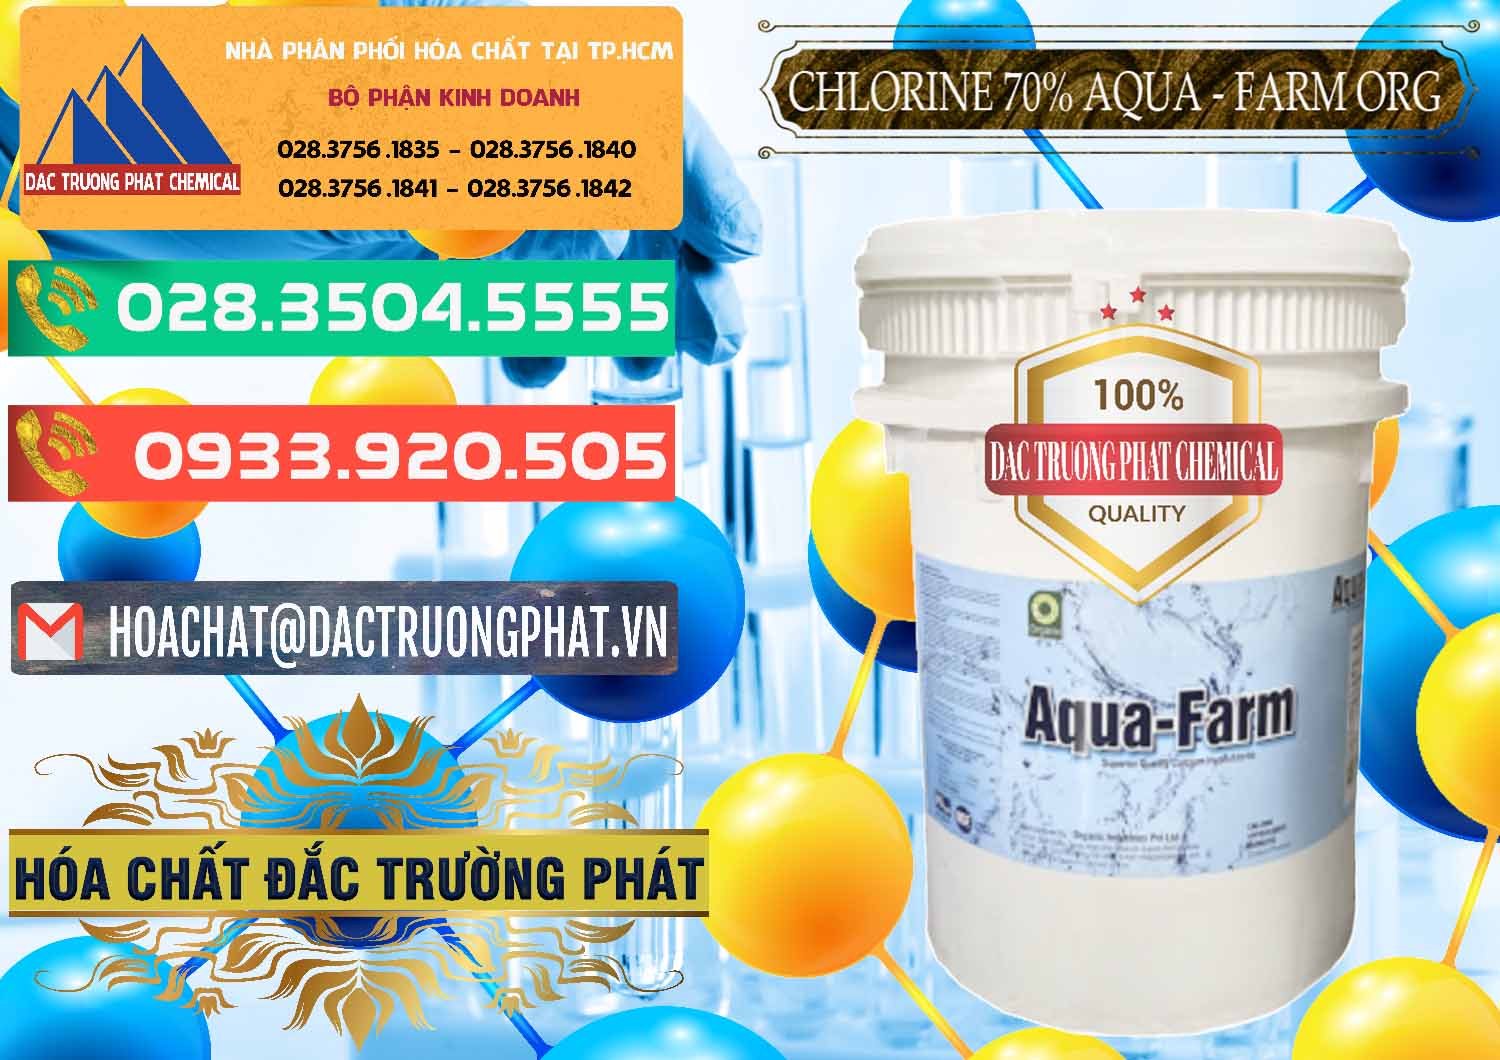 Đơn vị chuyên phân phối - bán Chlorine – Clorin 70% Aqua - Farm ORG Organic Ấn Độ India - 0246 - Nơi phân phối ( bán ) hóa chất tại TP.HCM - congtyhoachat.com.vn